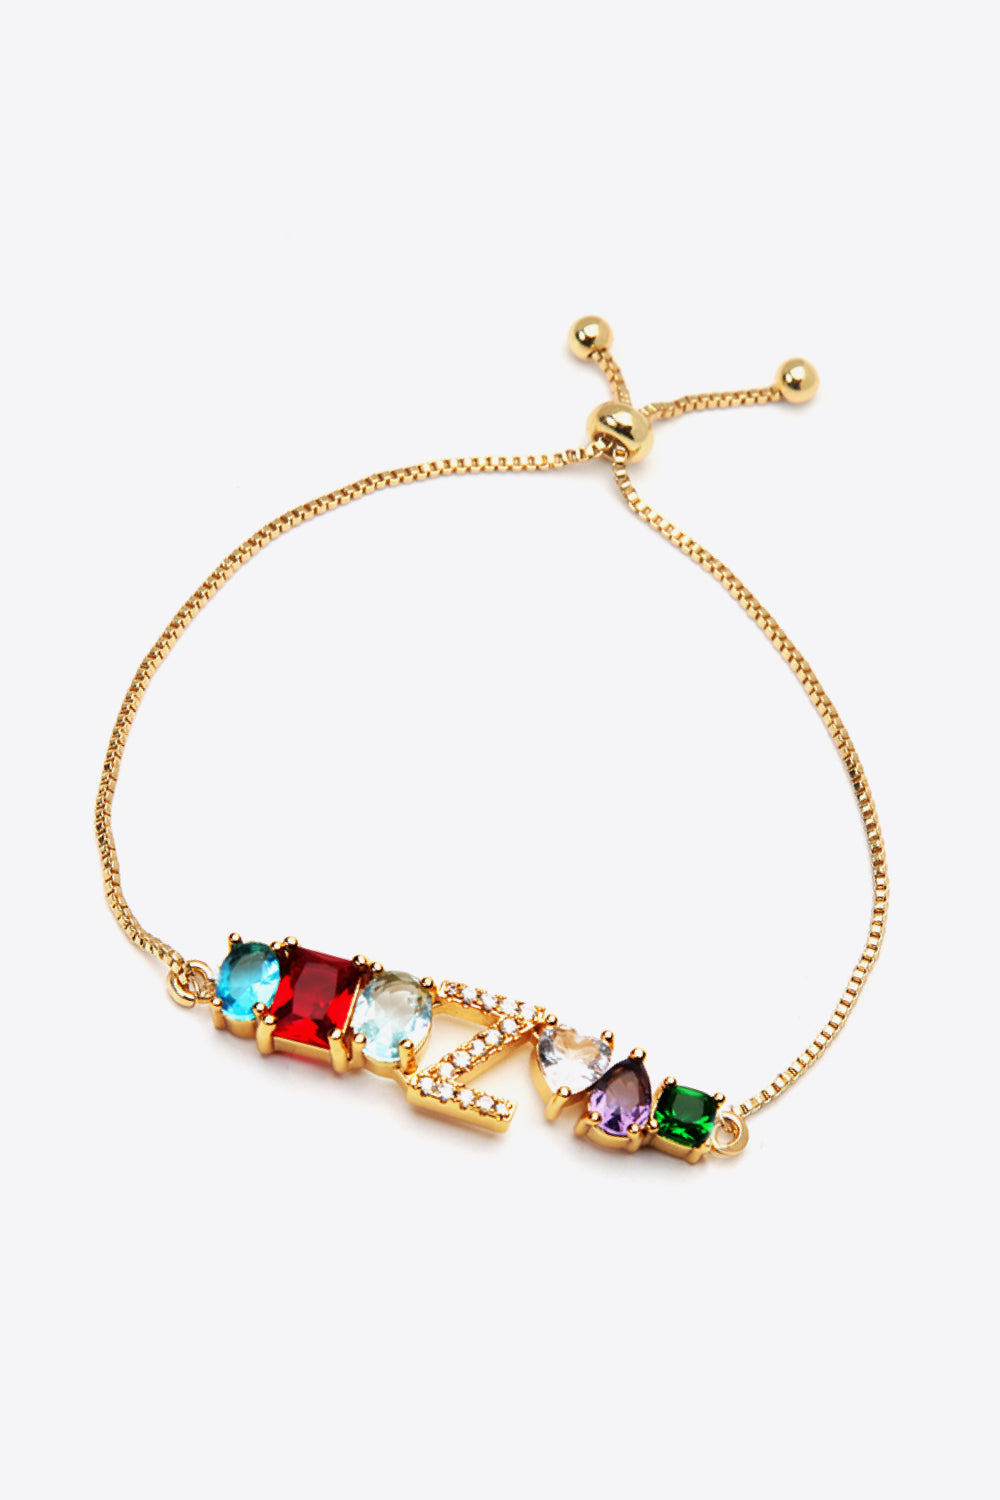 U to Z Zircon Bracelet - Women’s Jewelry - Bracelets - 17 - 2024